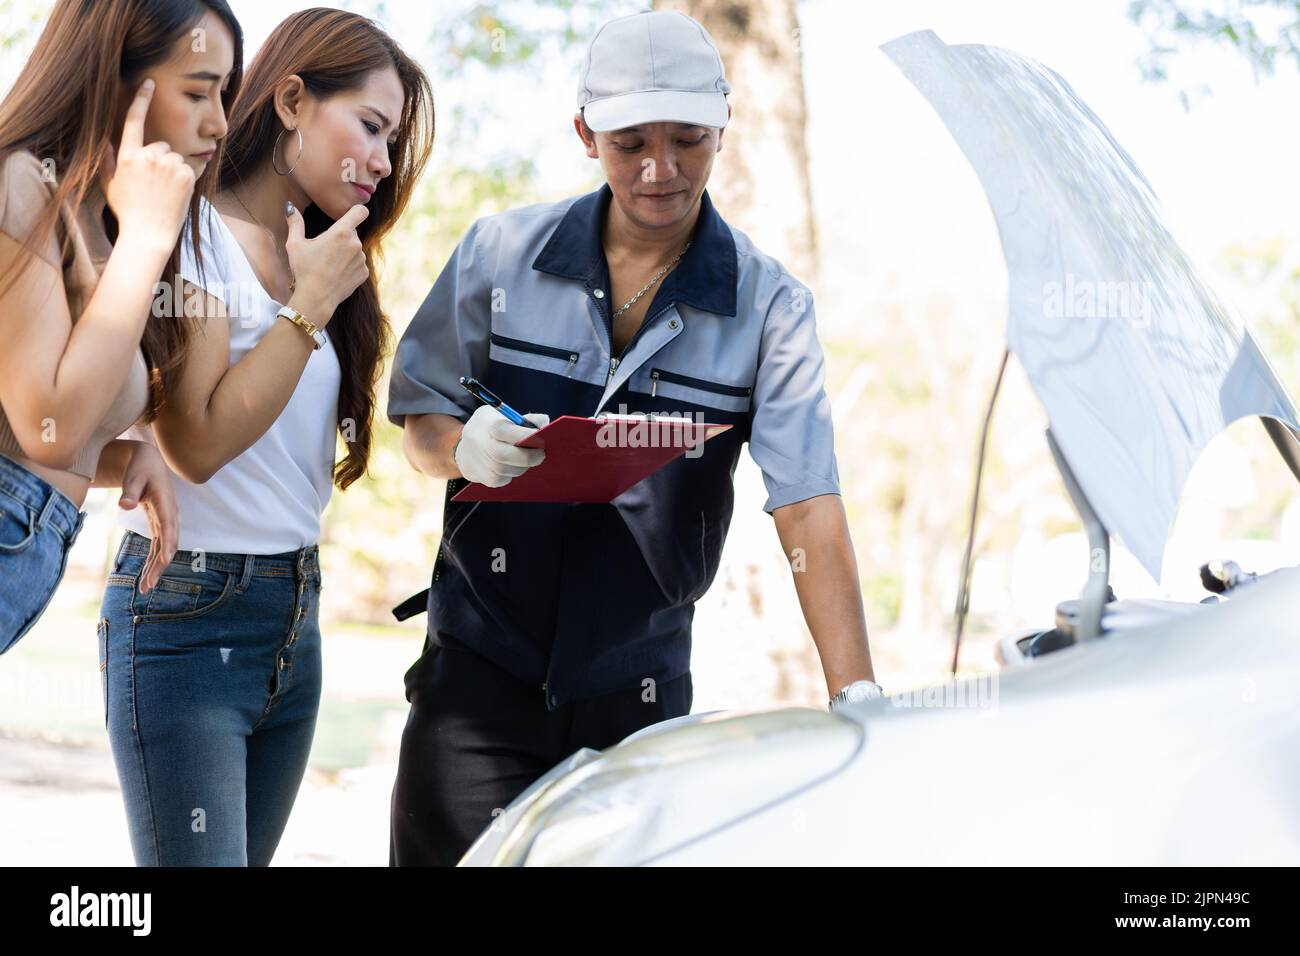 Le mécanicien automobile asiatique mâle tient un presse-papiers et examine le problème de panne de moteur de voiture avec les femmes client et d'expliquer la cause racine et d'estimer repari Banque D'Images